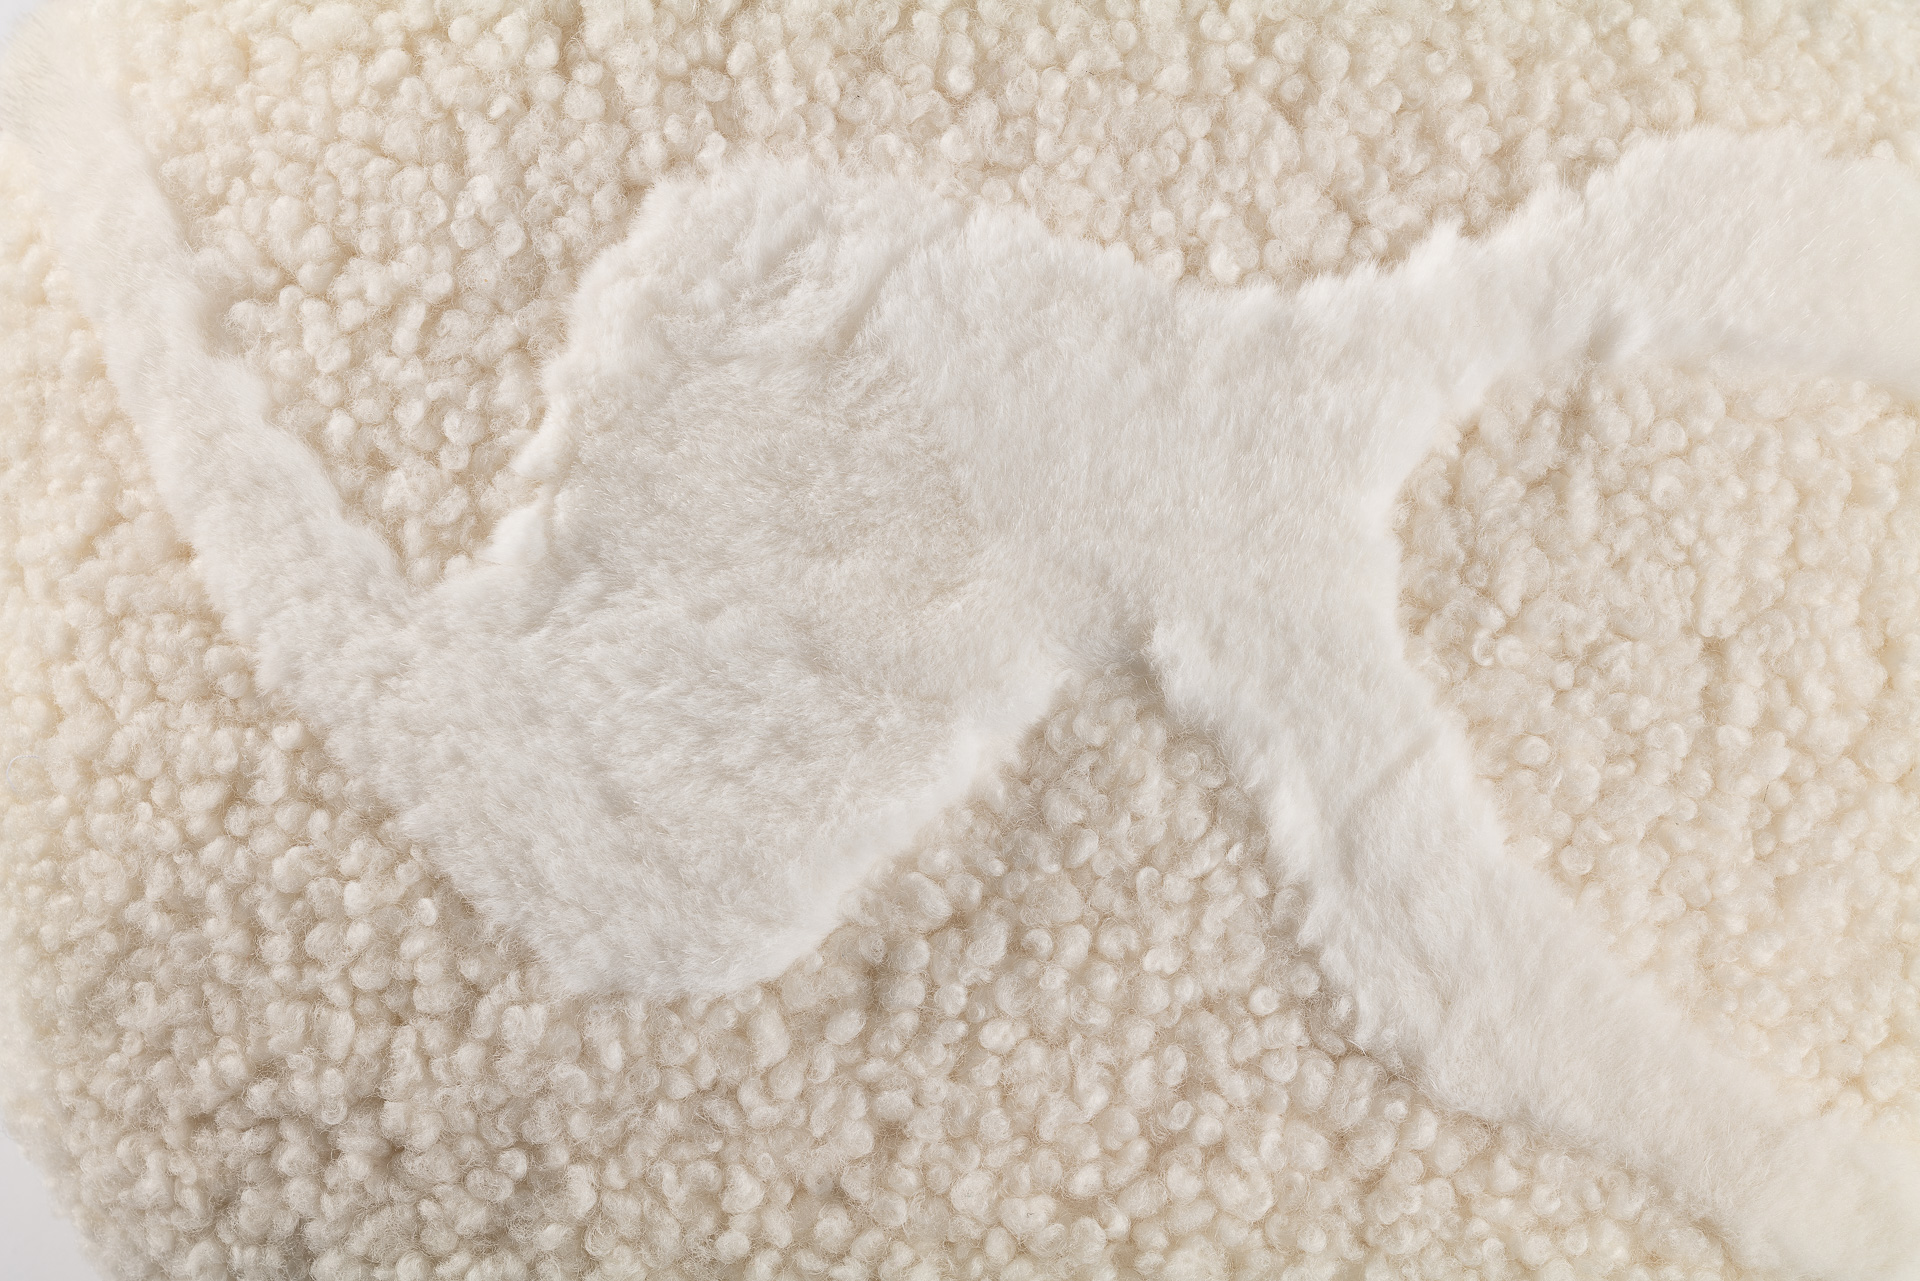 Un coussin rond blanc bi matière luxueuse. Agneau curly et lapin rex blanc forment un motif léger et organique.